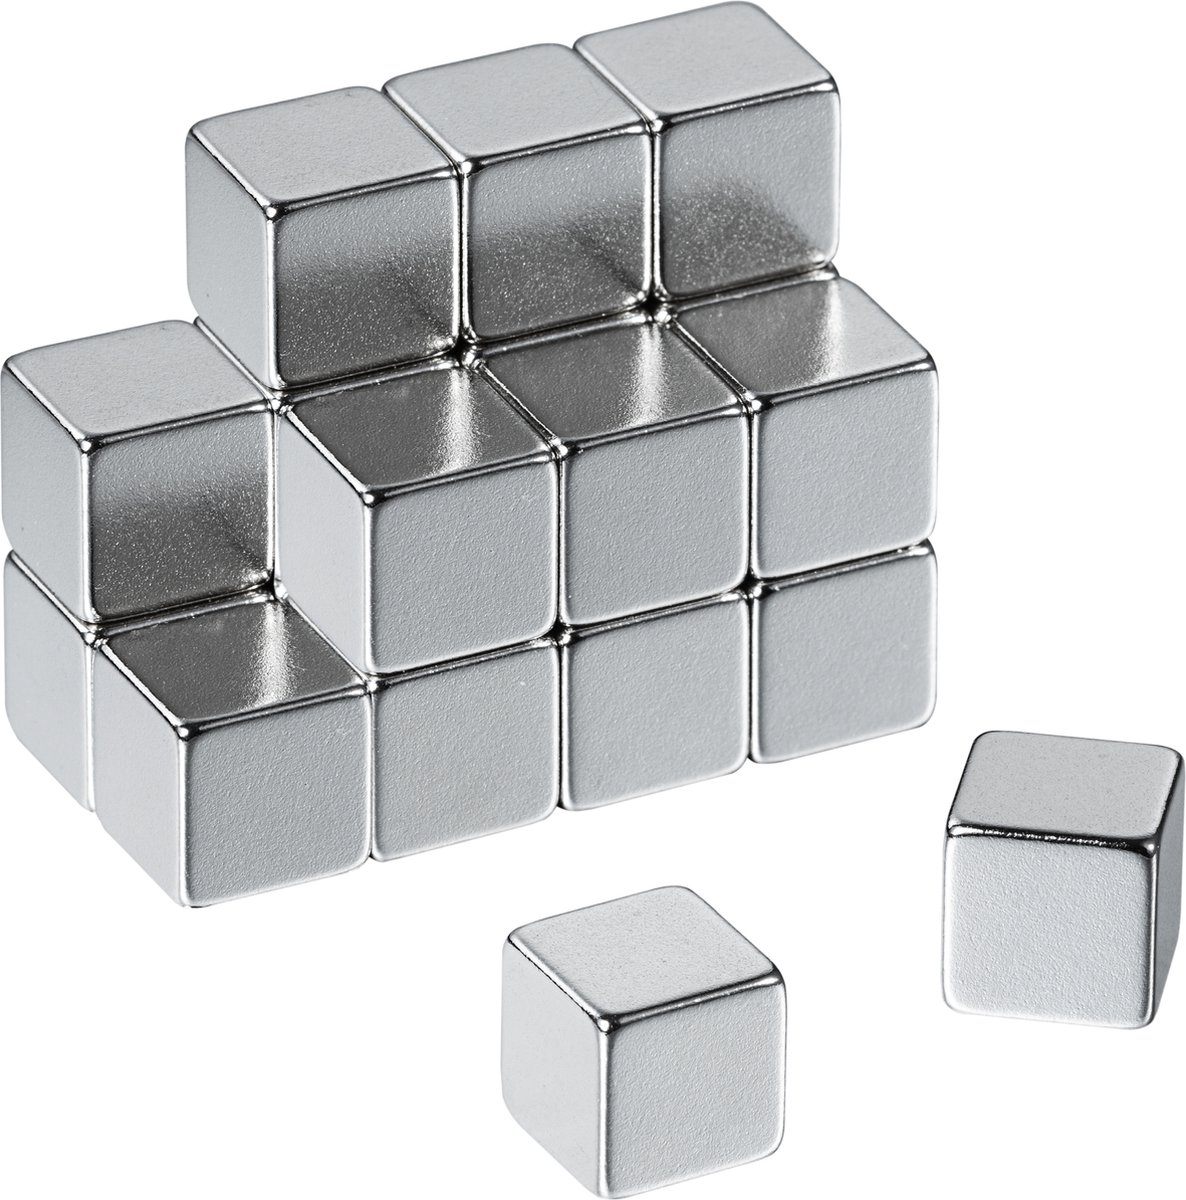 NeoMagNova | 20 Sterke Neodymium Magneten voor Glasmagneetbord | 8 mm Kubus Magneten voor Glasmagneetbord, Glasmagneetborden en veel meer.